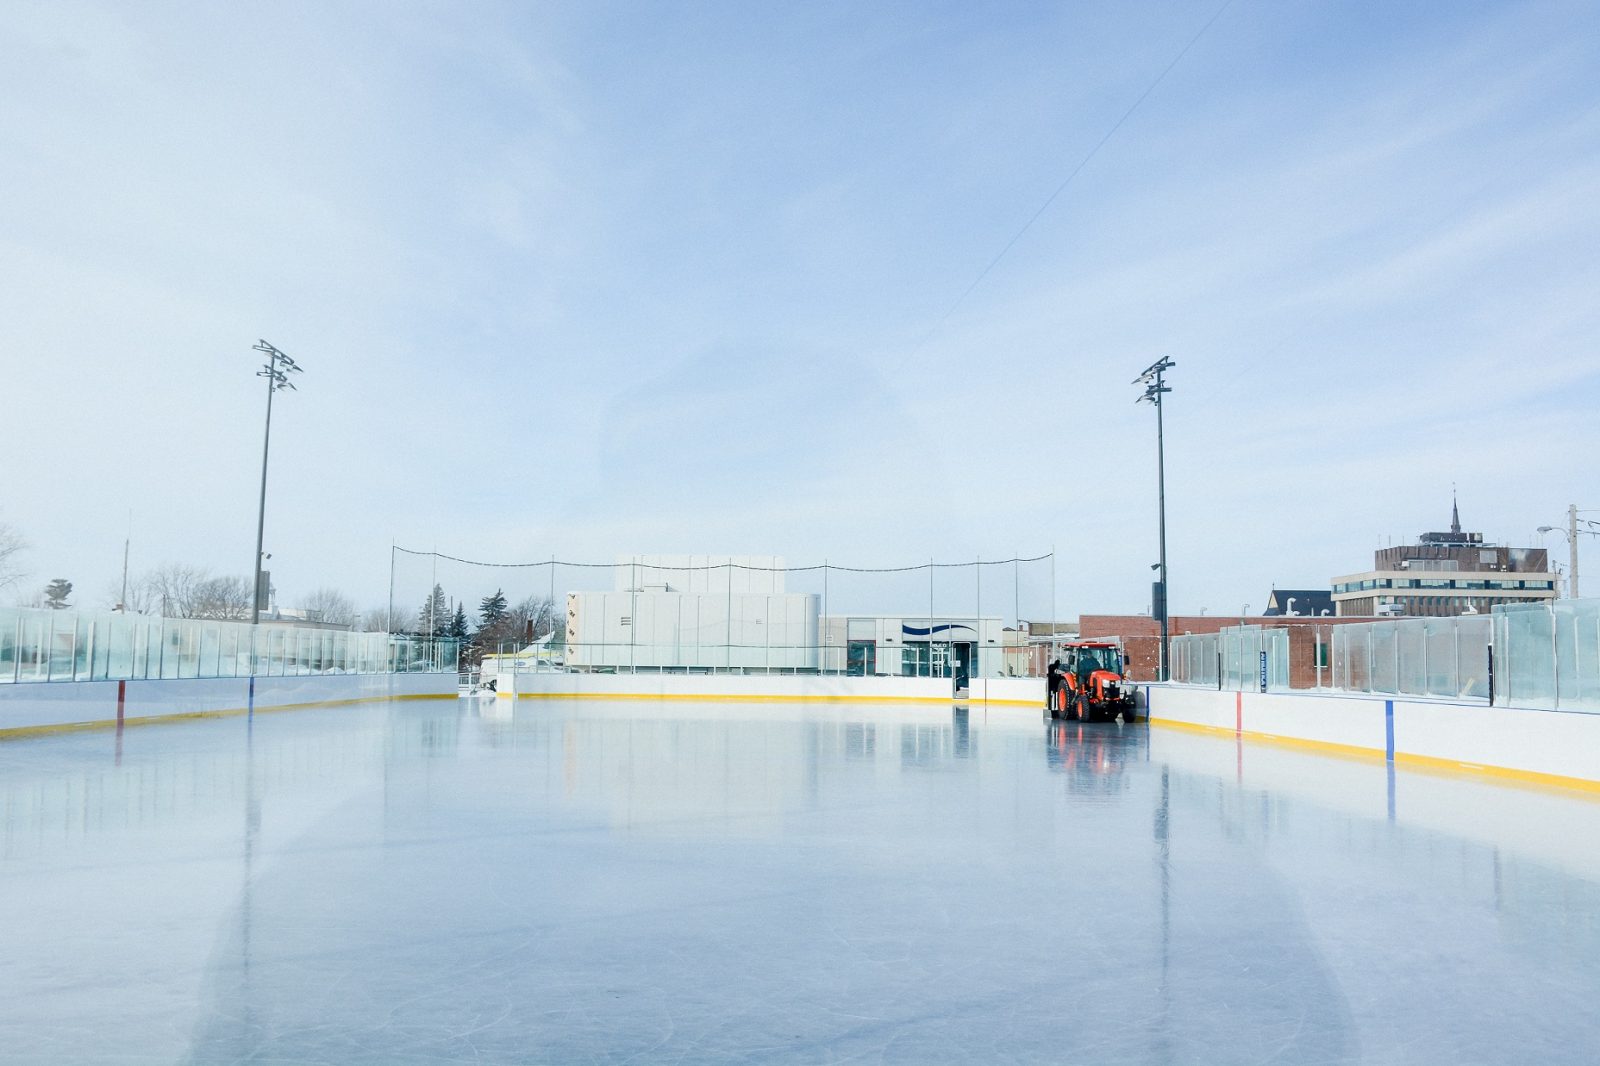 À vos patins, la patinoire réfrigérée ouvre samedi (horaire complet)